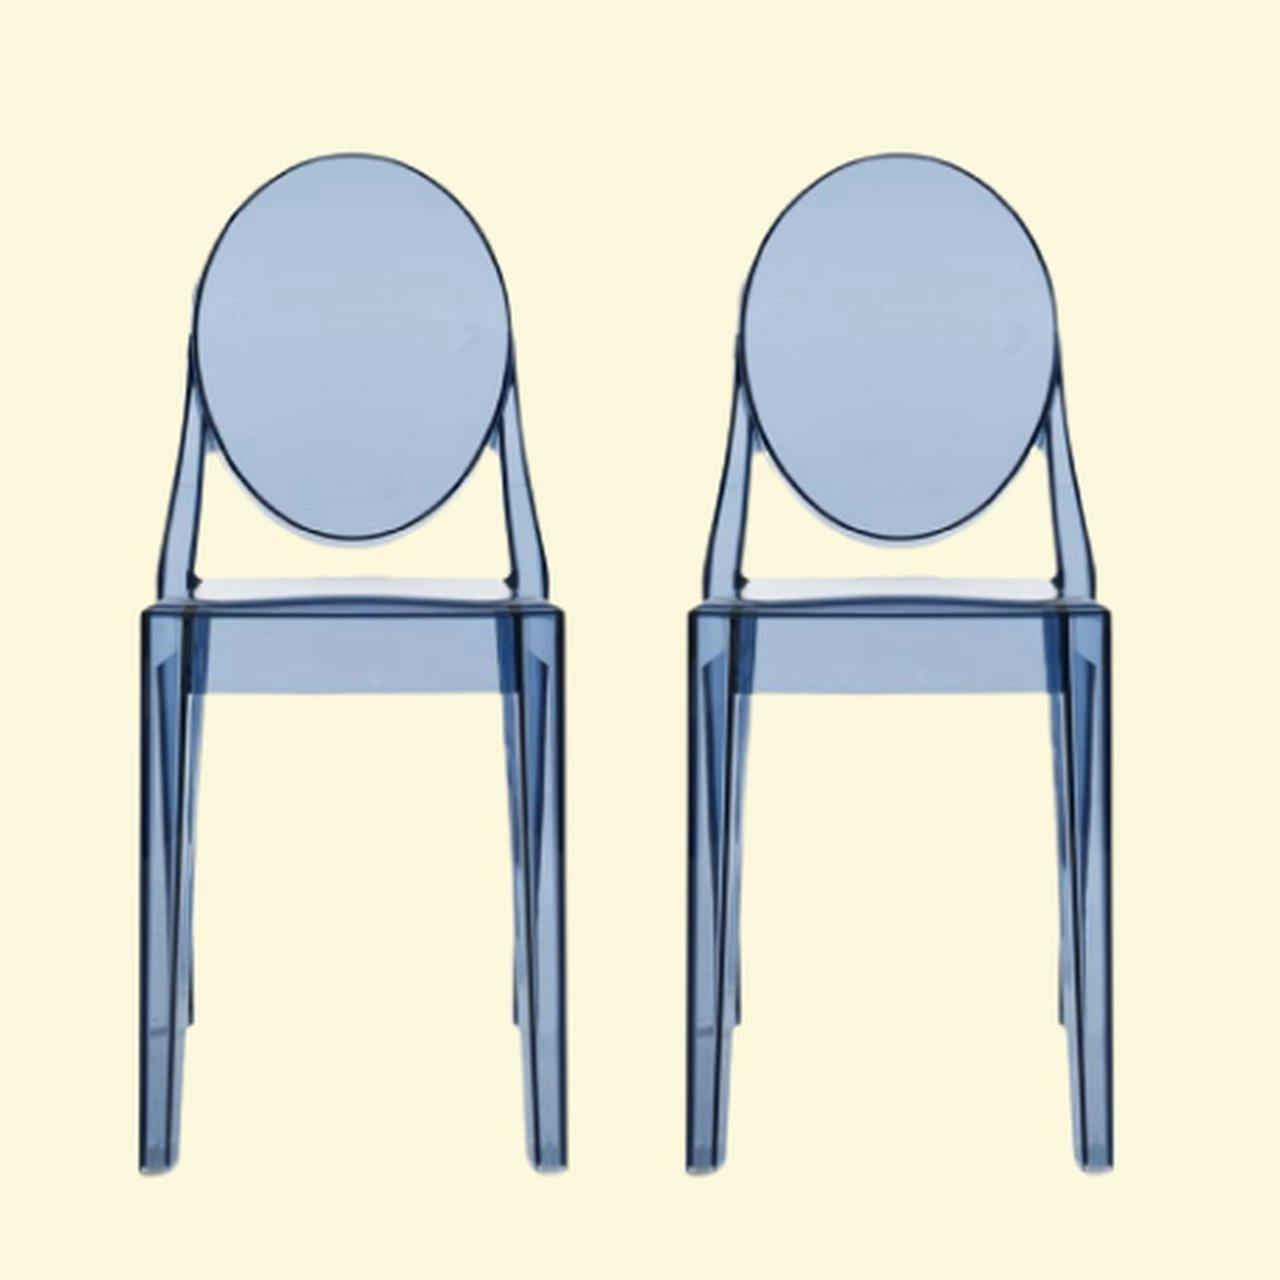 Joe Colombo Dining chairs